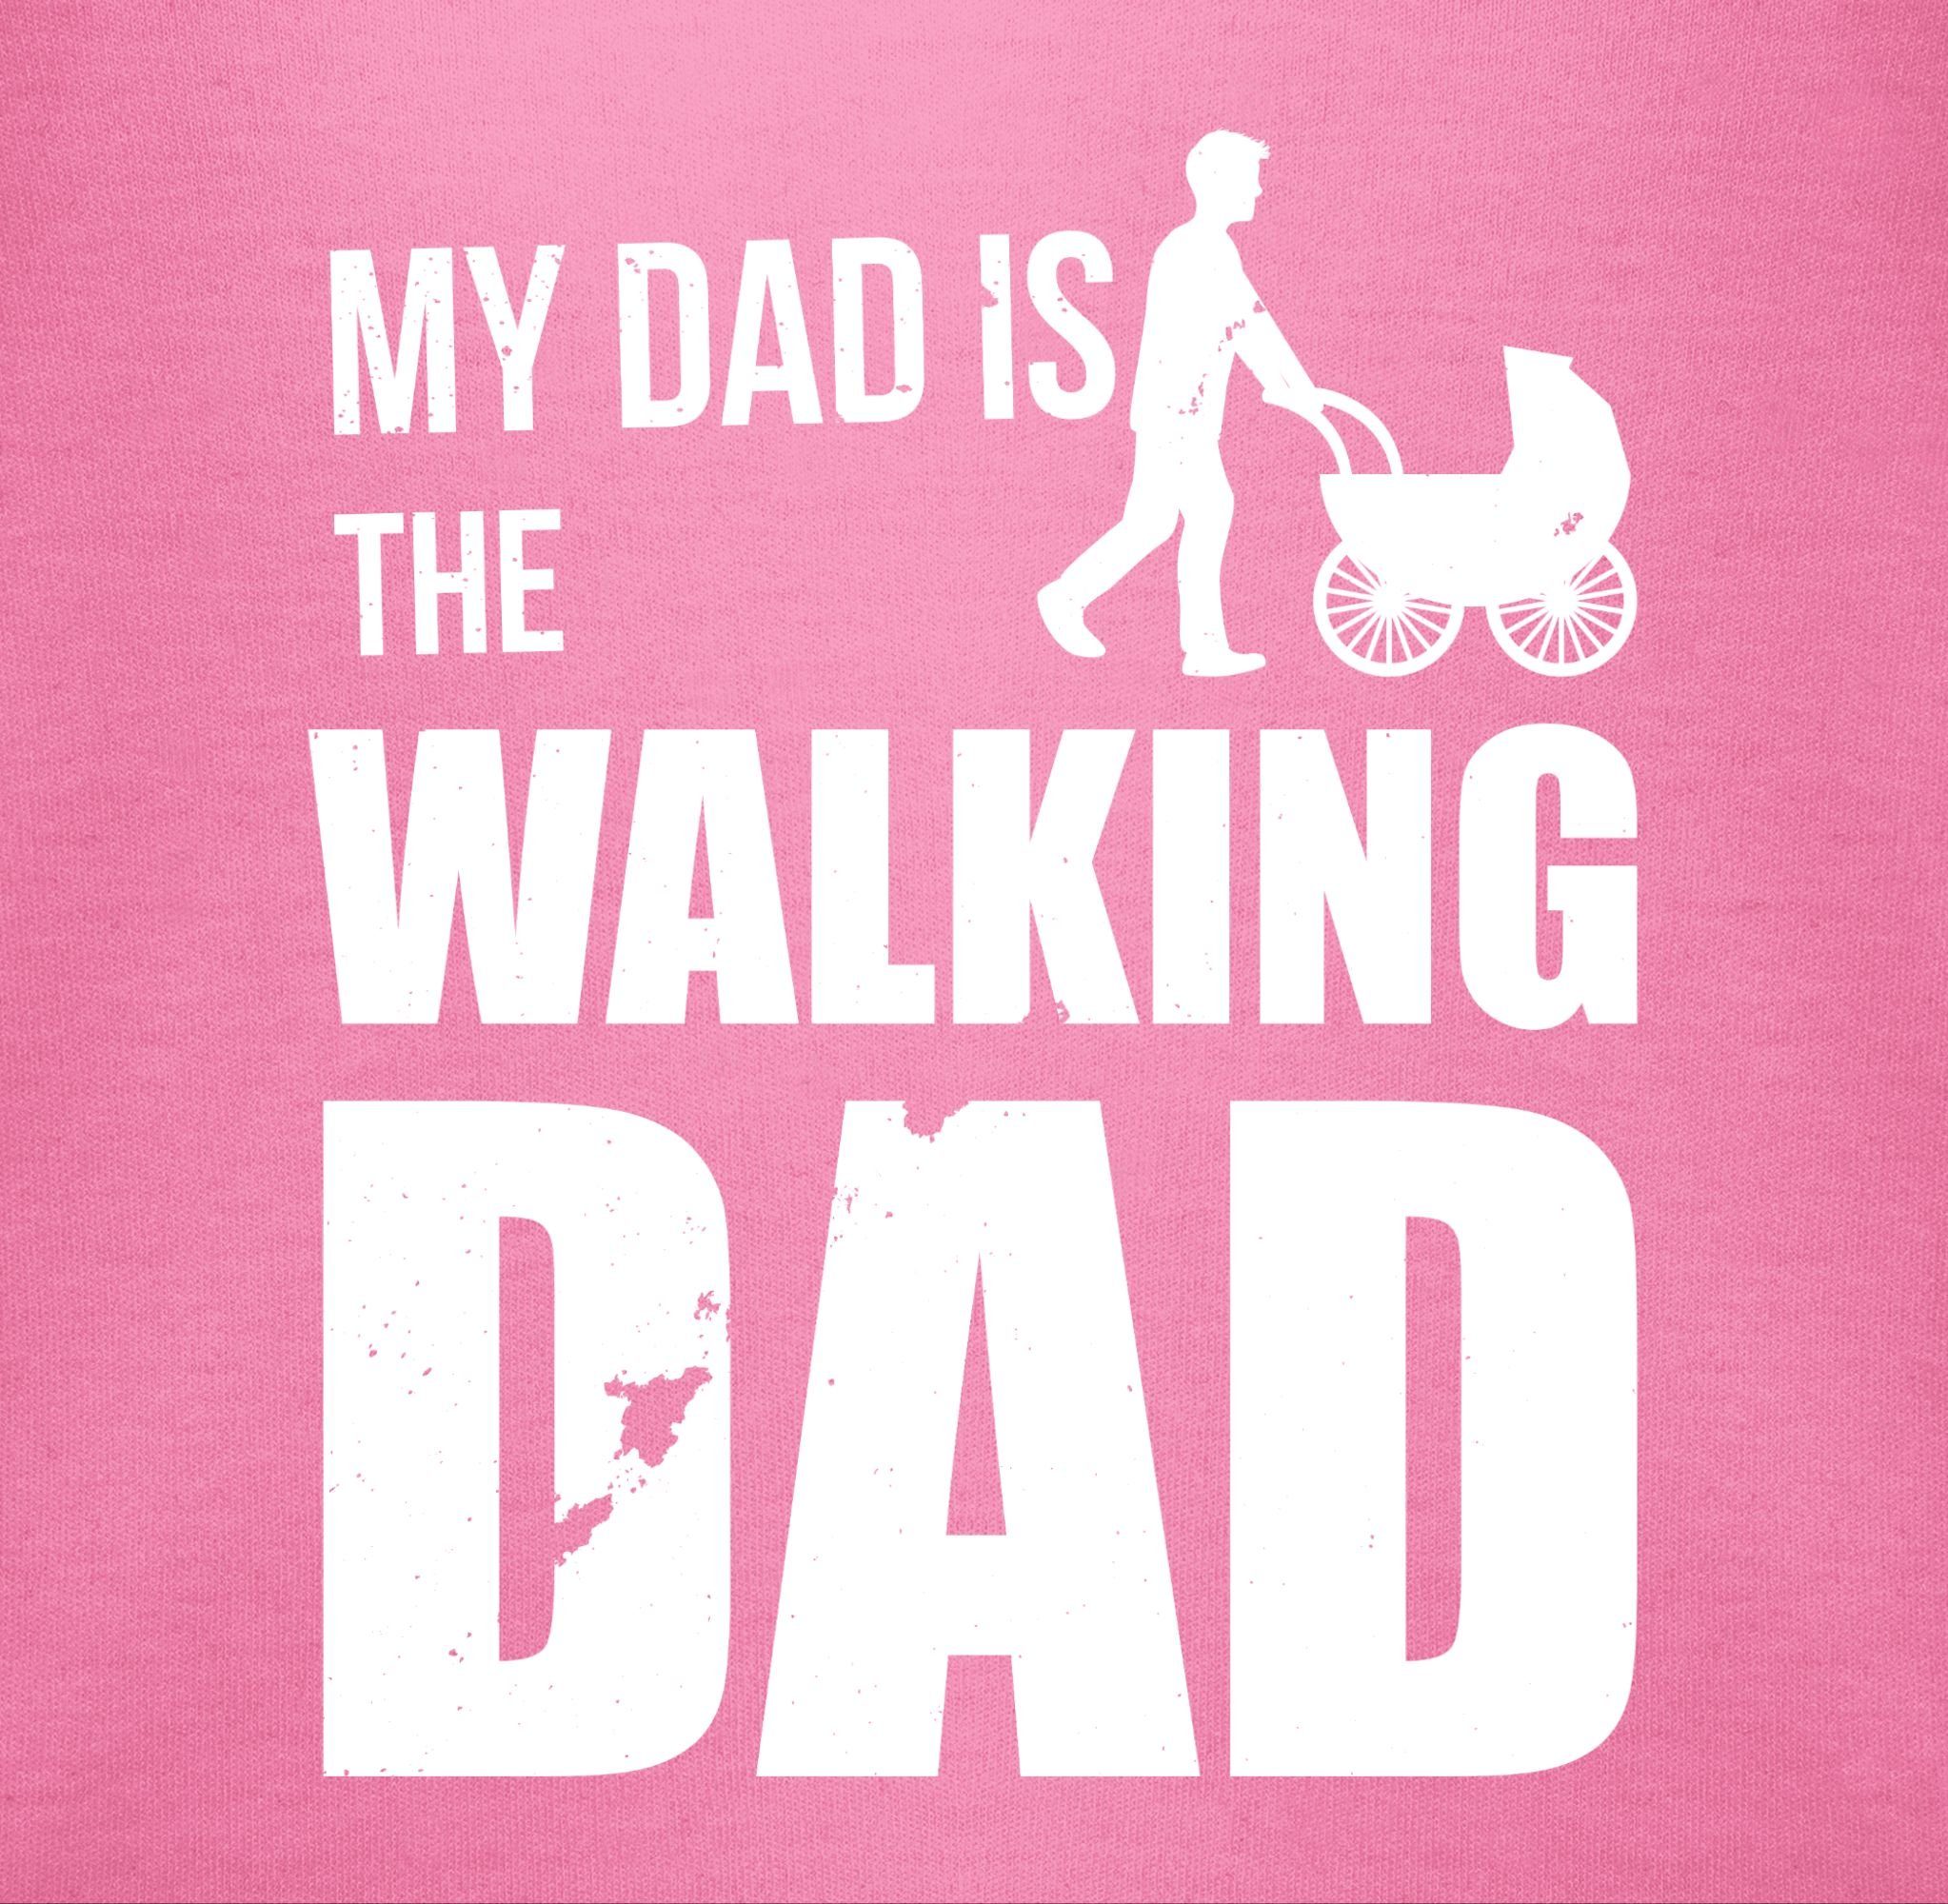 Junge Mädchen Dad & weiß the Shirtracer Baby 3 Walking My Strampler Dad Pink Shirtbody is